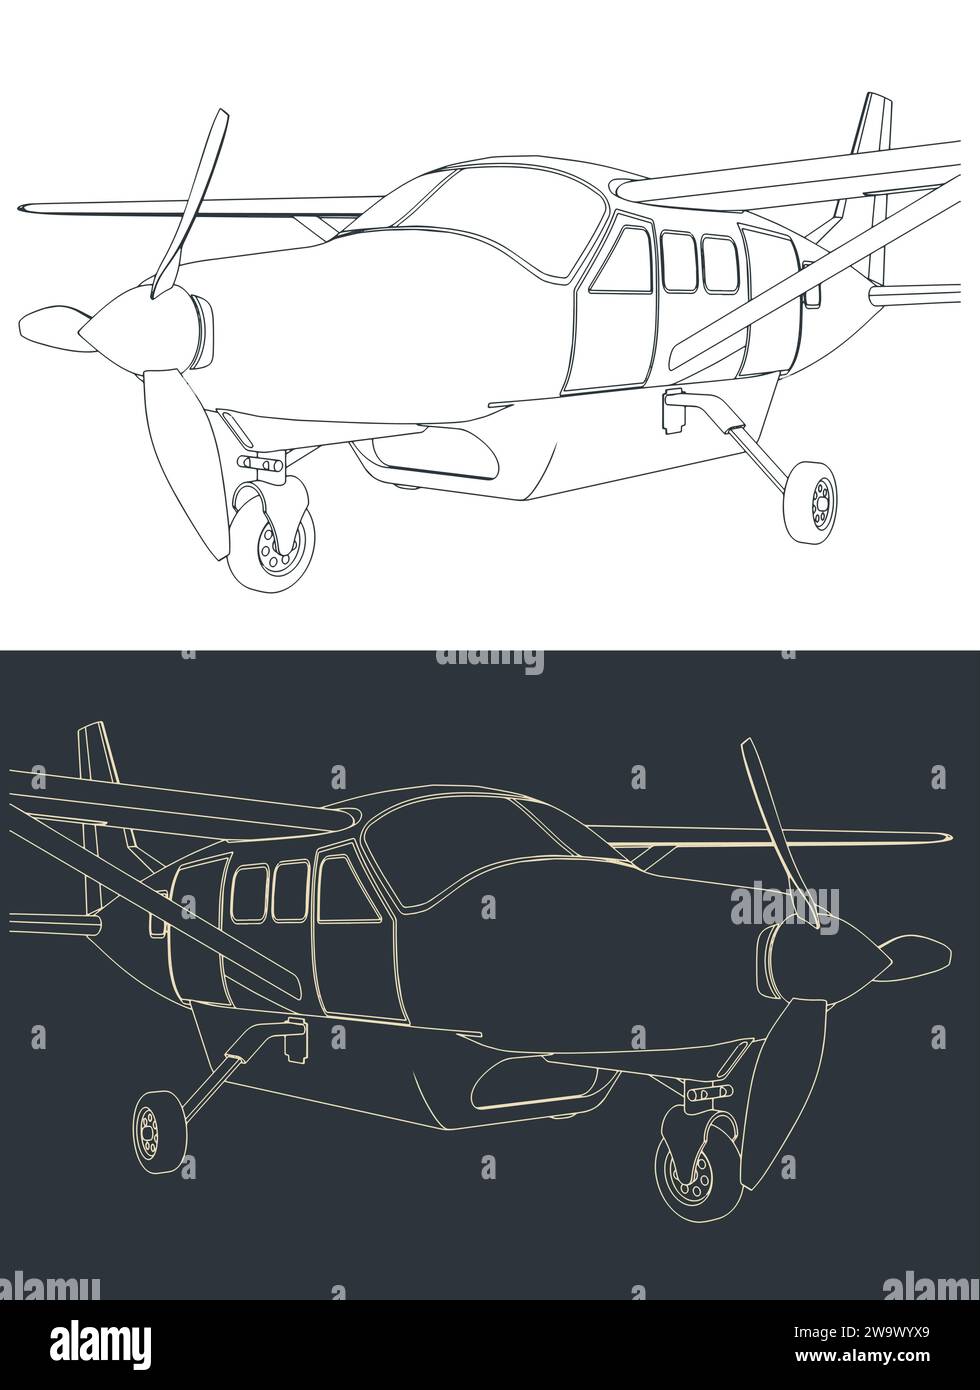 Illustrazioni vettoriali stilizzate di aerei leggeri a turboelica monomotore da vicino Illustrazione Vettoriale